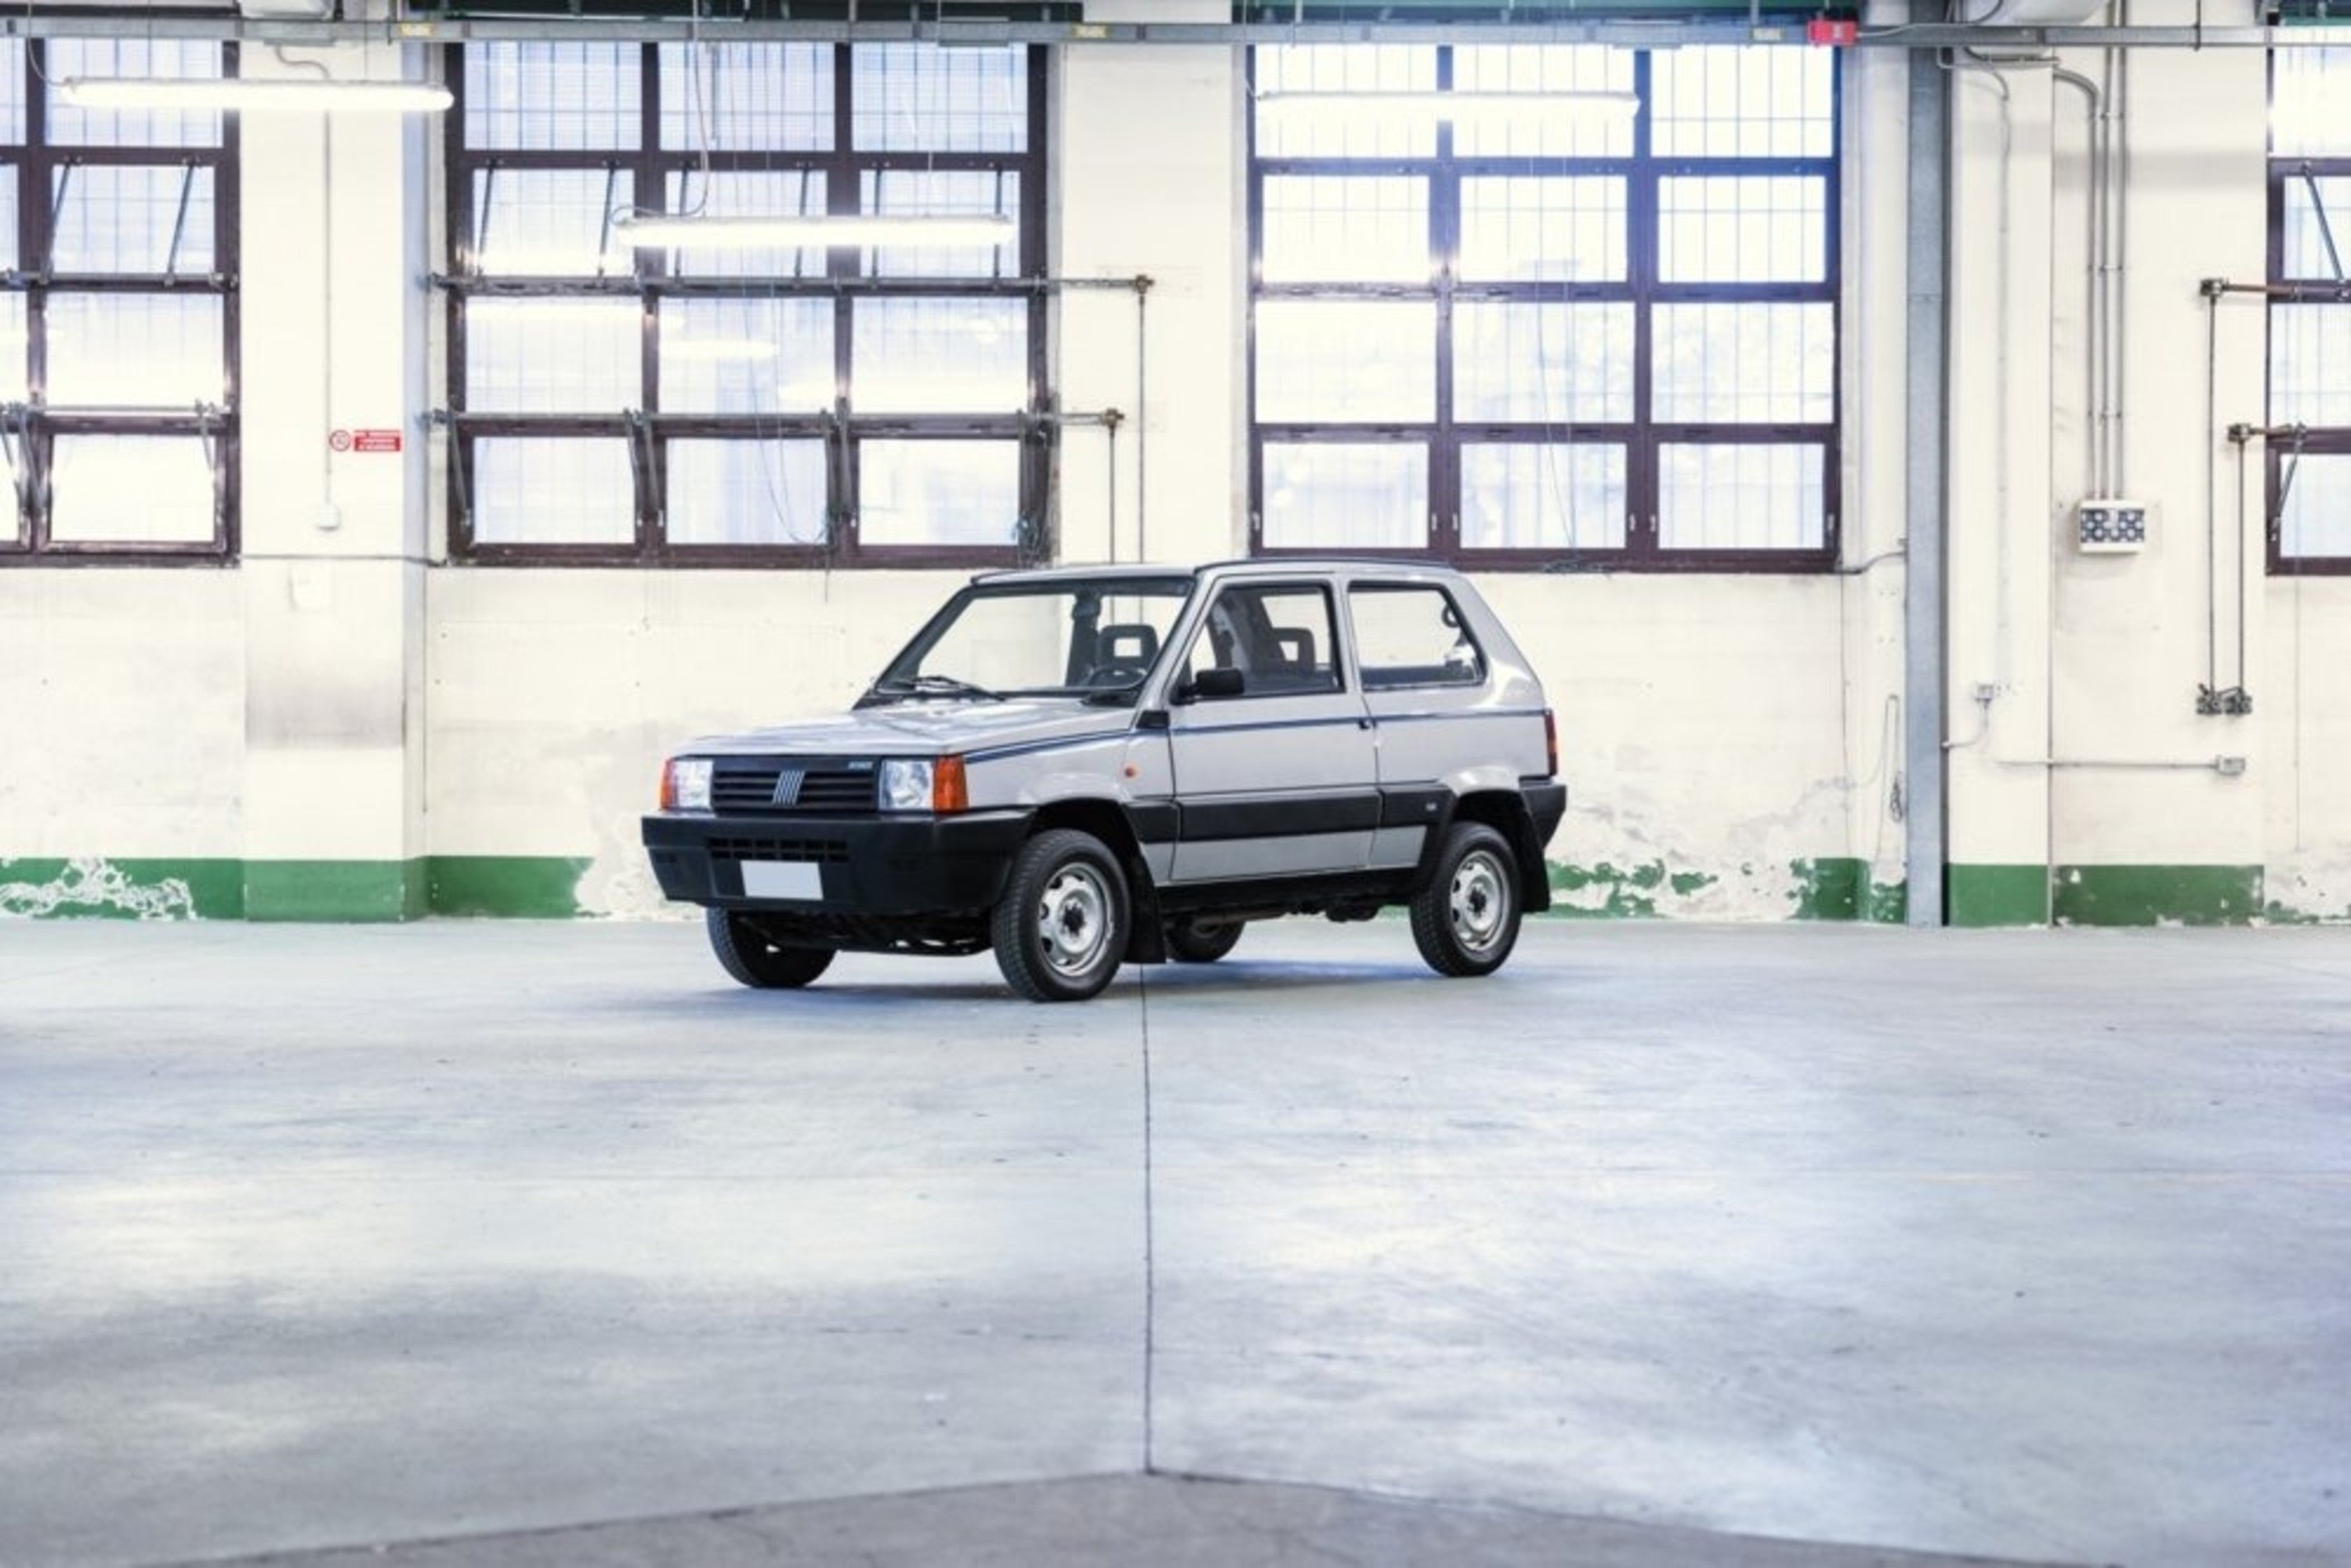 Fiat Panda 4x4: vendita record per quella di Gianni Agnelli